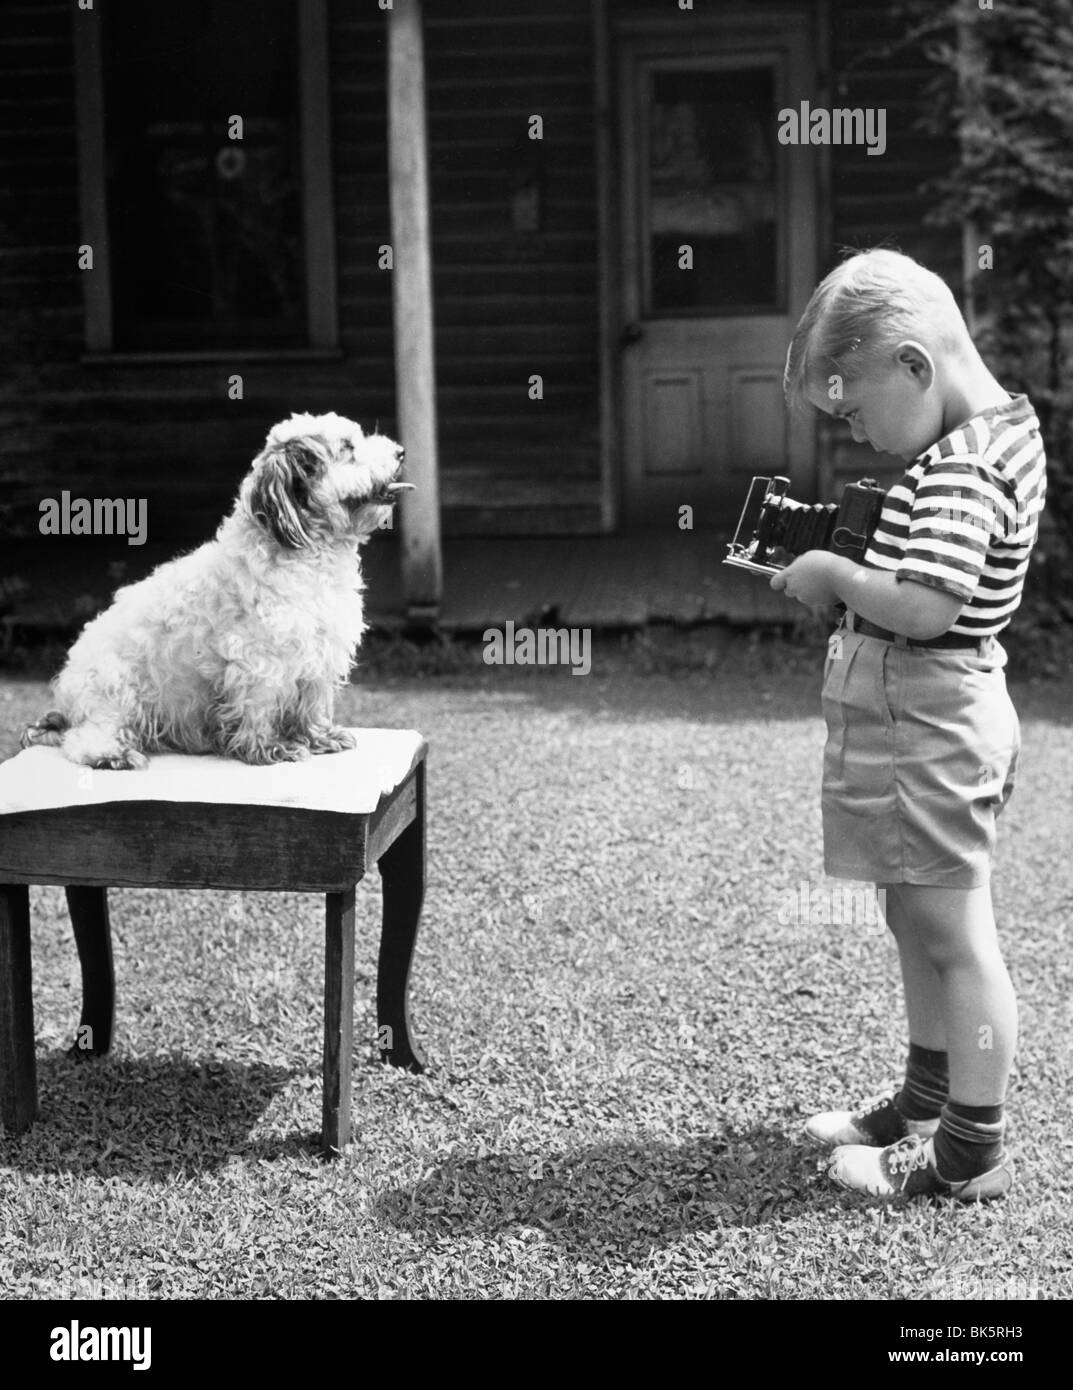 El perfil lateral del niño tomando la fotografía de su perro Foto de stock